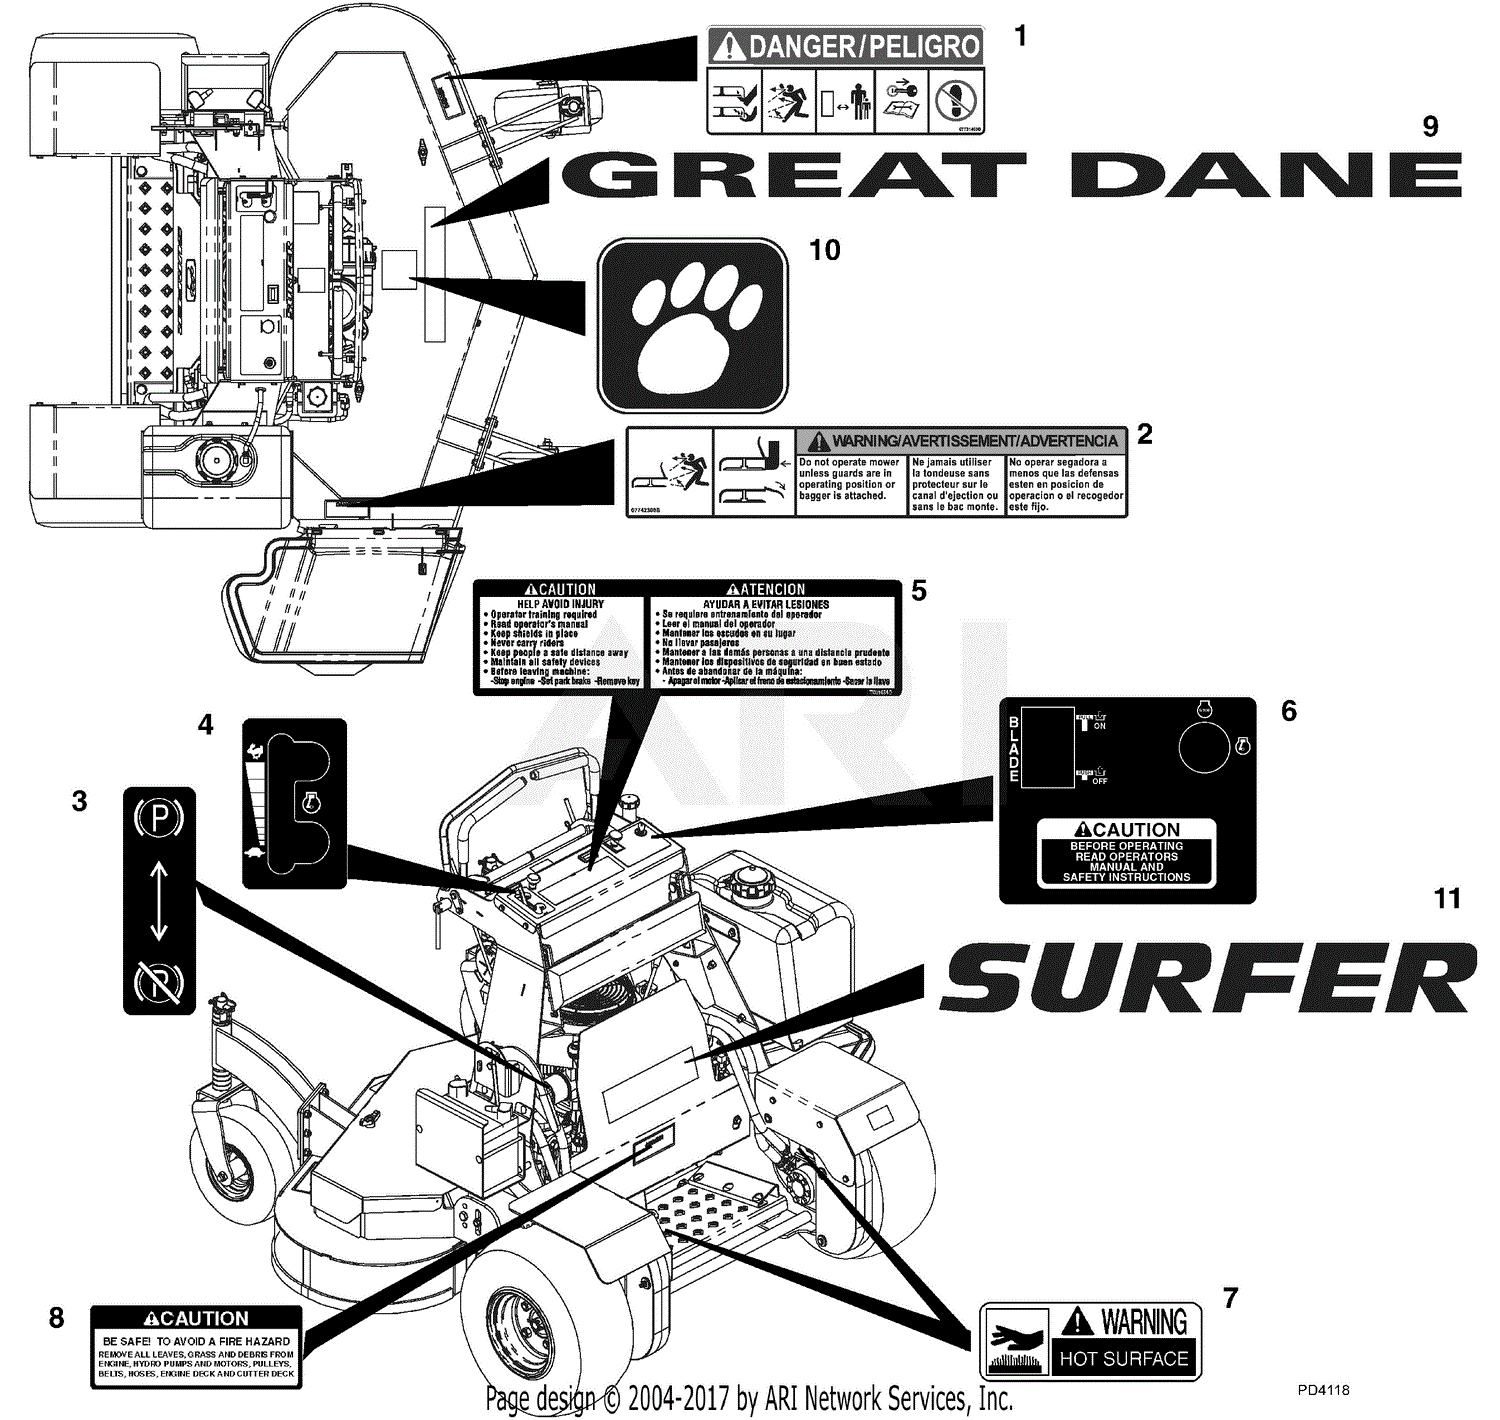 48 Great Dane Super Surfer